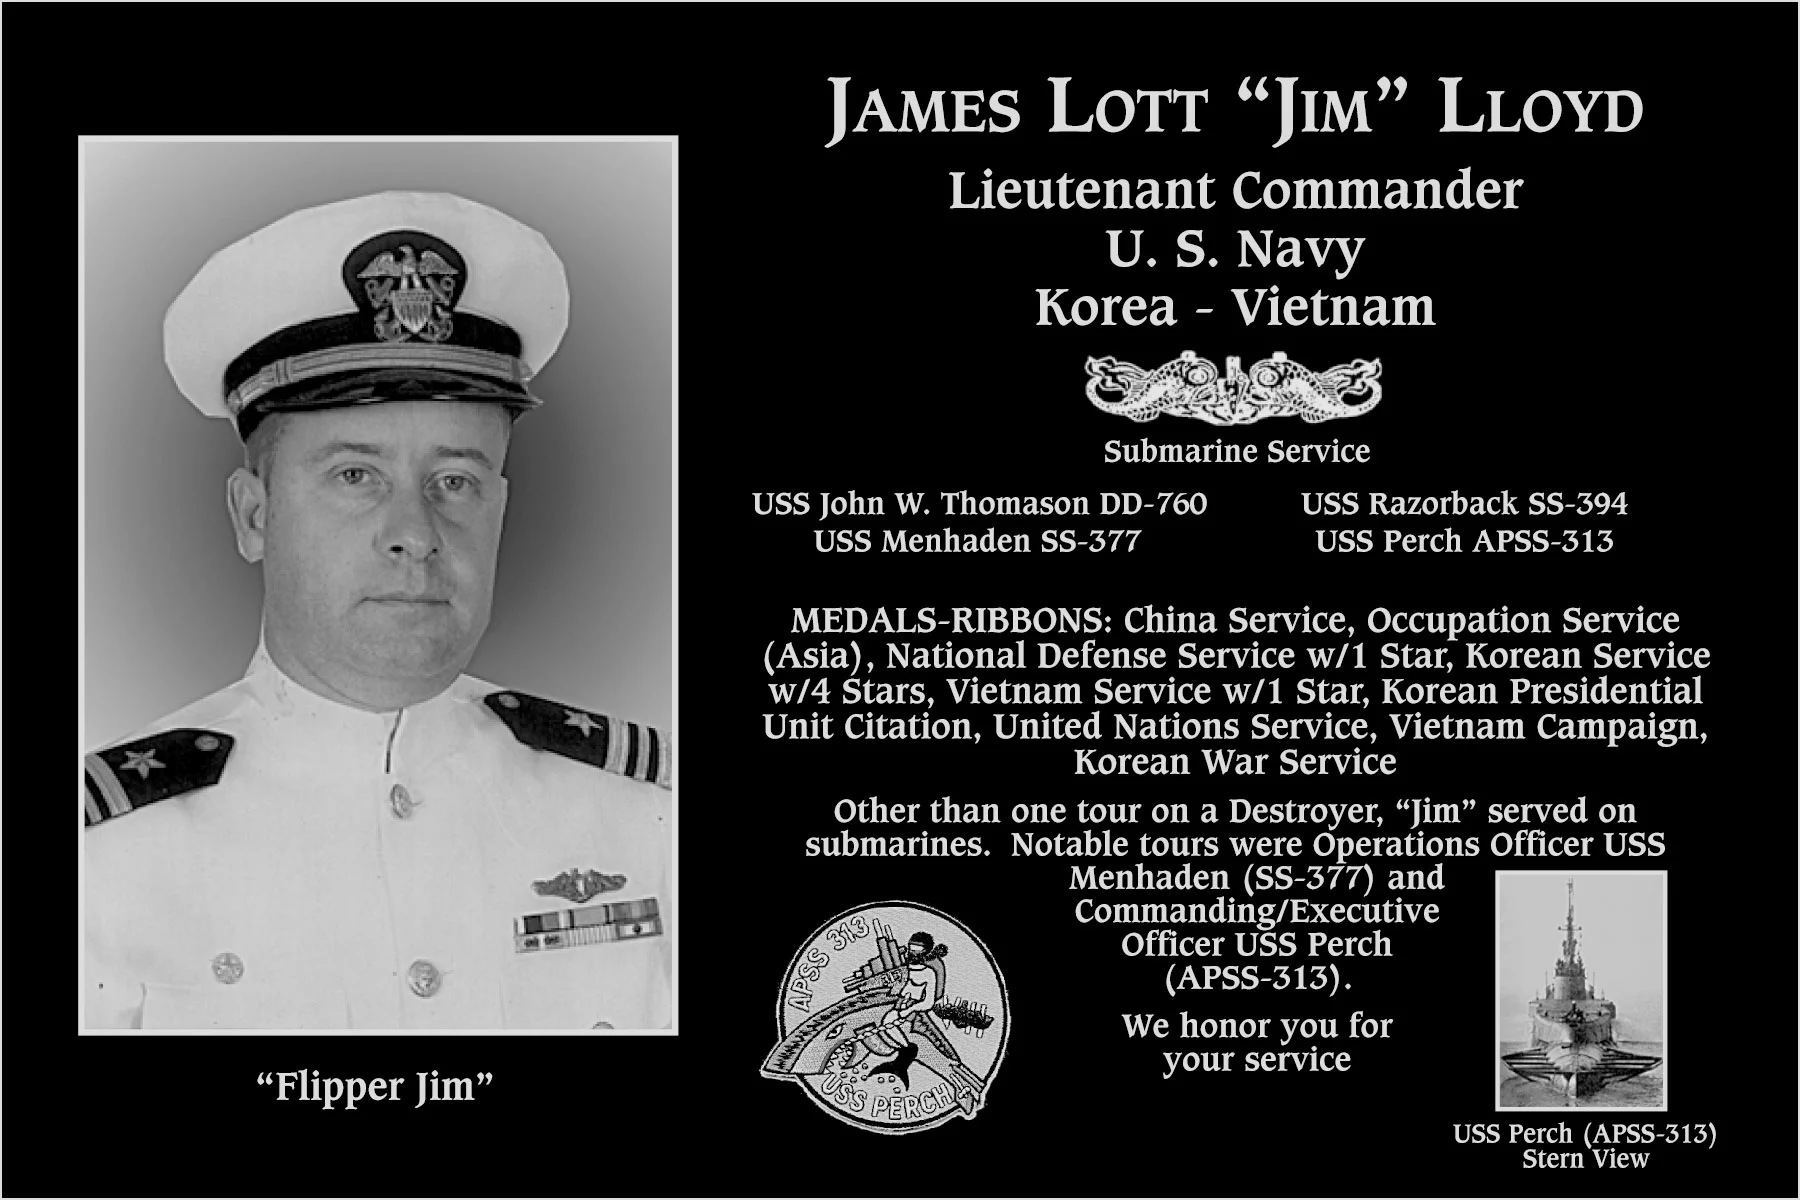 James Lott “Flipper Jim” Lloyd